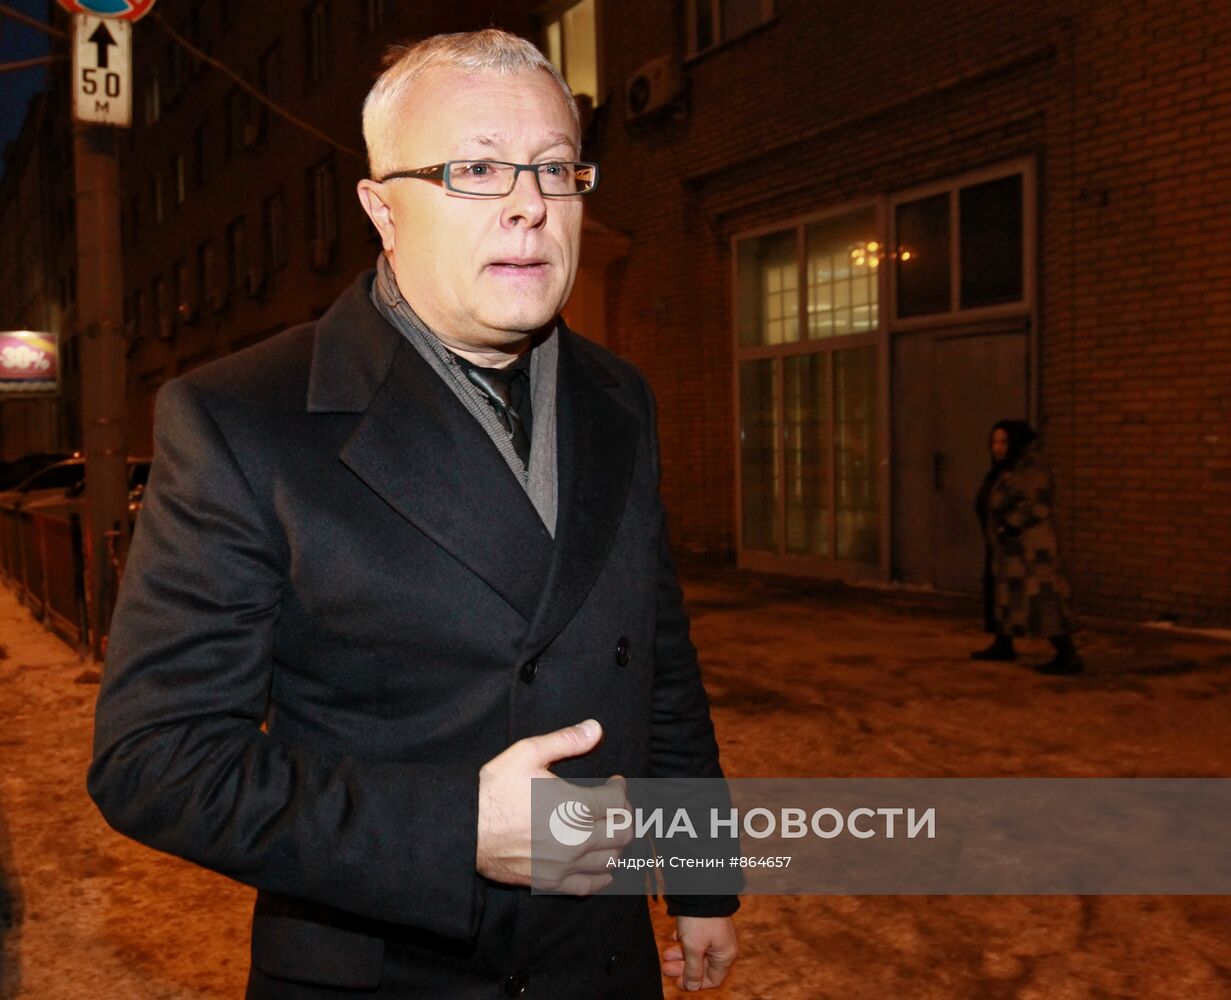 А.Лебедев вызван для допроса в Главное следственное управление